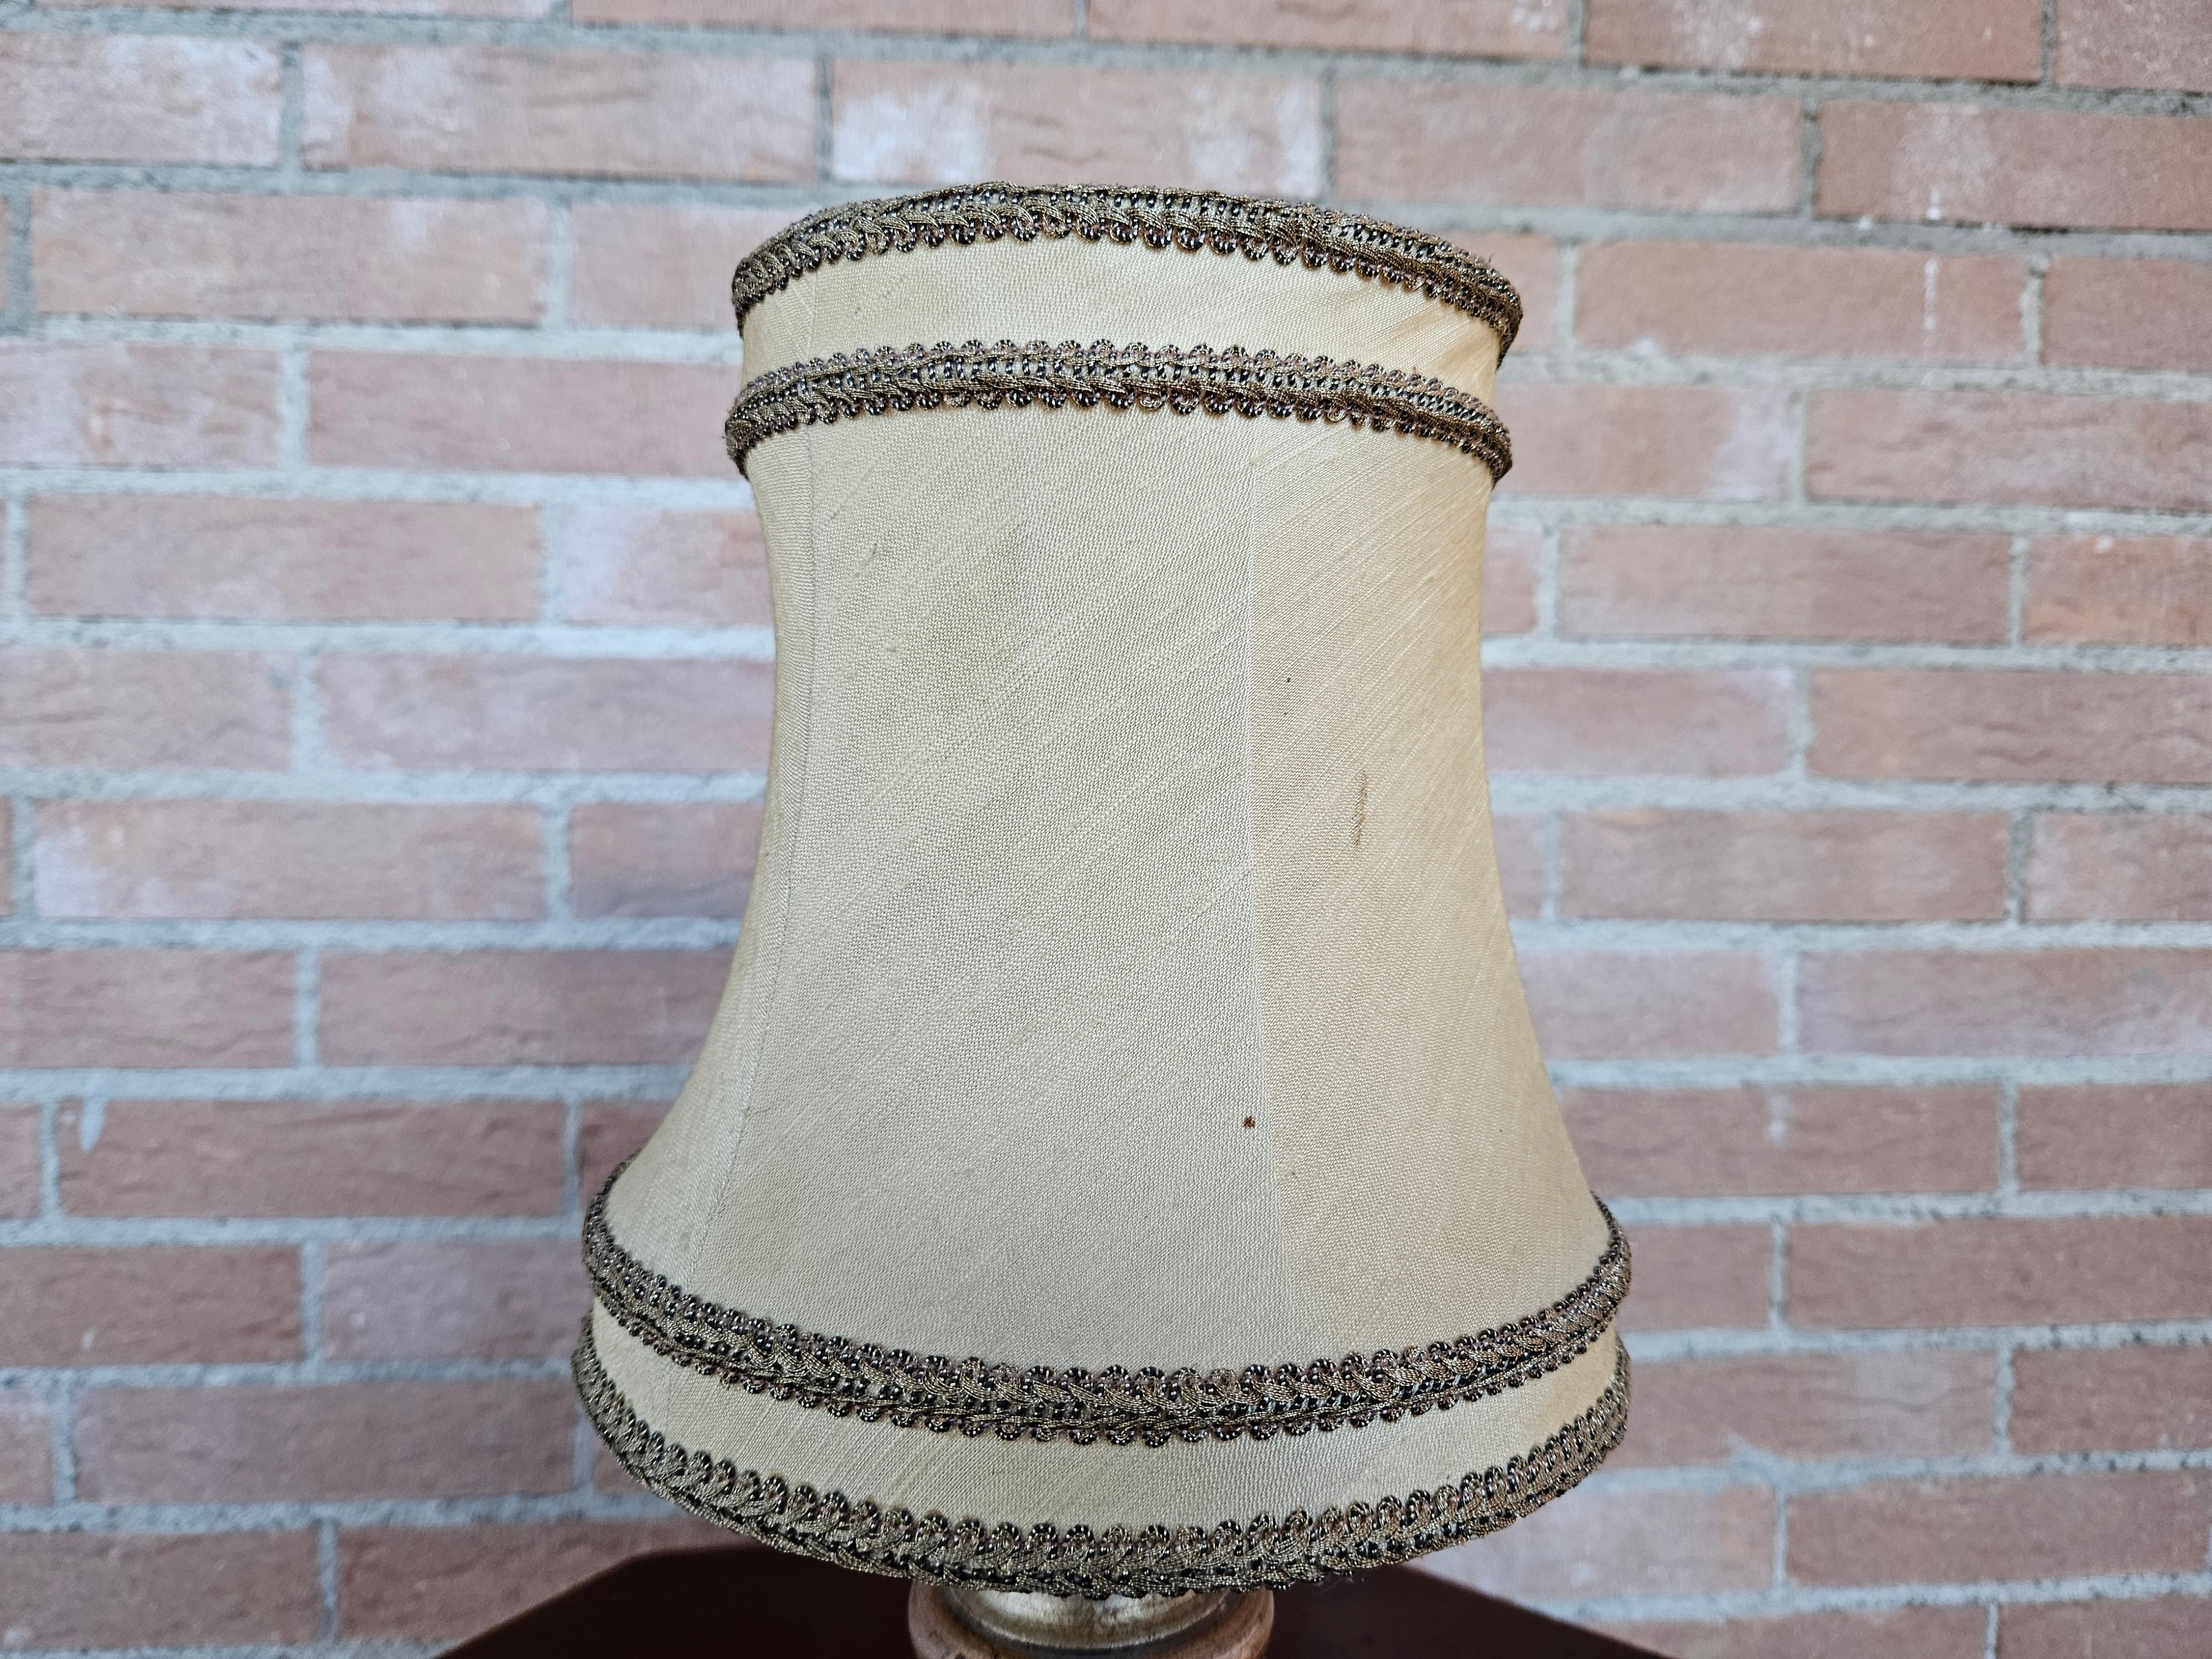 Lampe de chevet (abat jour) ou lampe de table en bois avec abat-jour en tissu.

Ampoule non incluse.